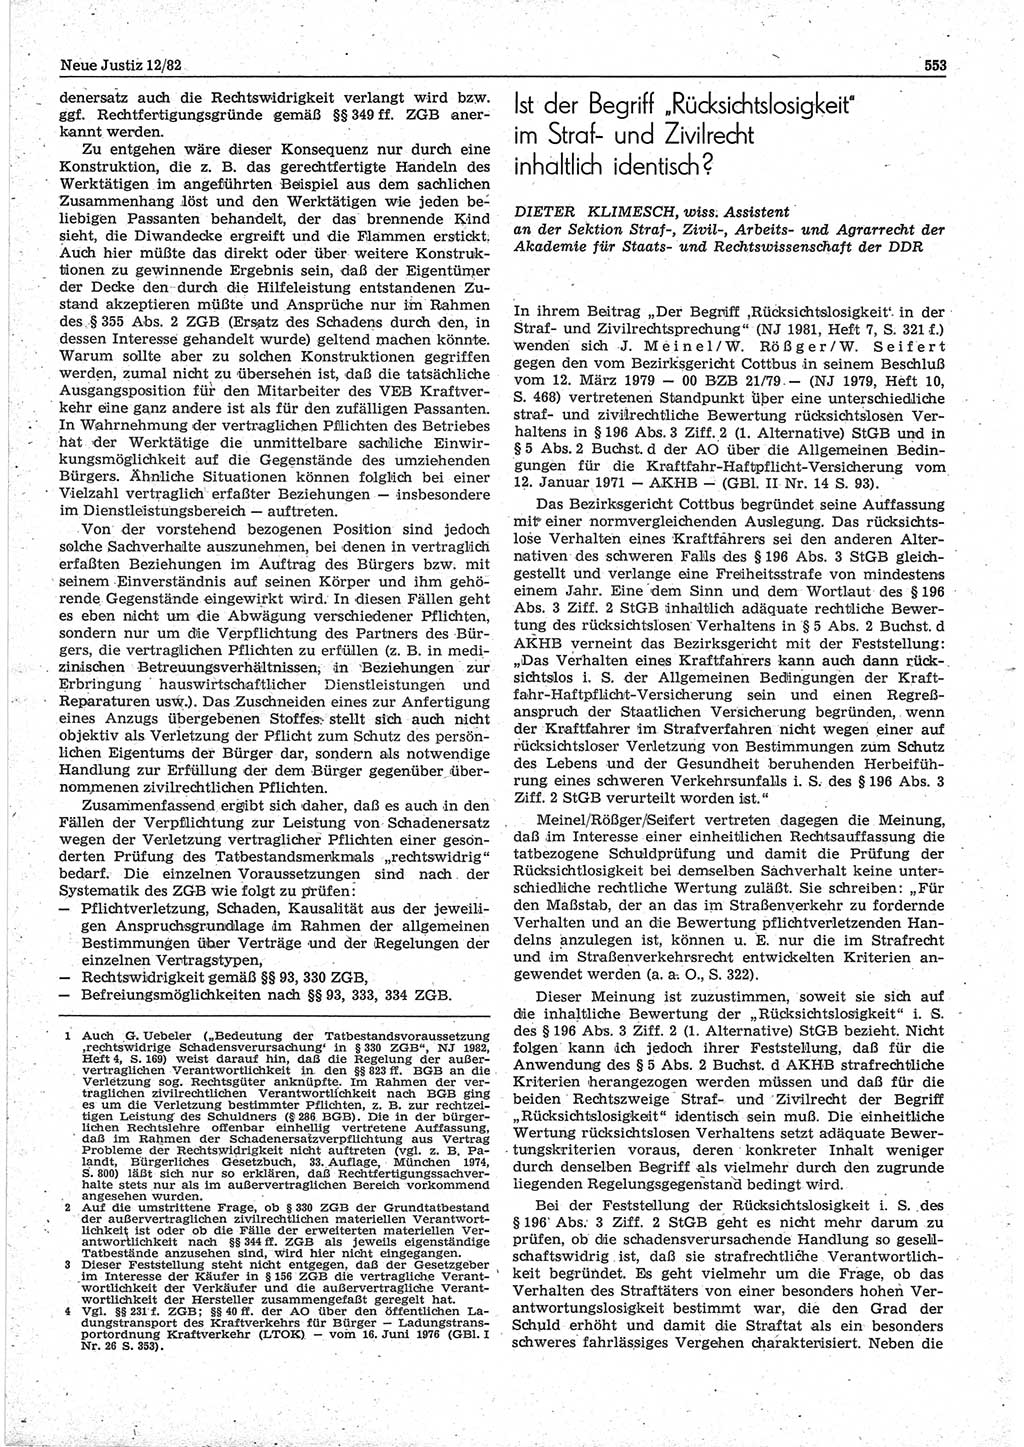 Neue Justiz (NJ), Zeitschrift für sozialistisches Recht und Gesetzlichkeit [Deutsche Demokratische Republik (DDR)], 36. Jahrgang 1982, Seite 553 (NJ DDR 1982, S. 553)